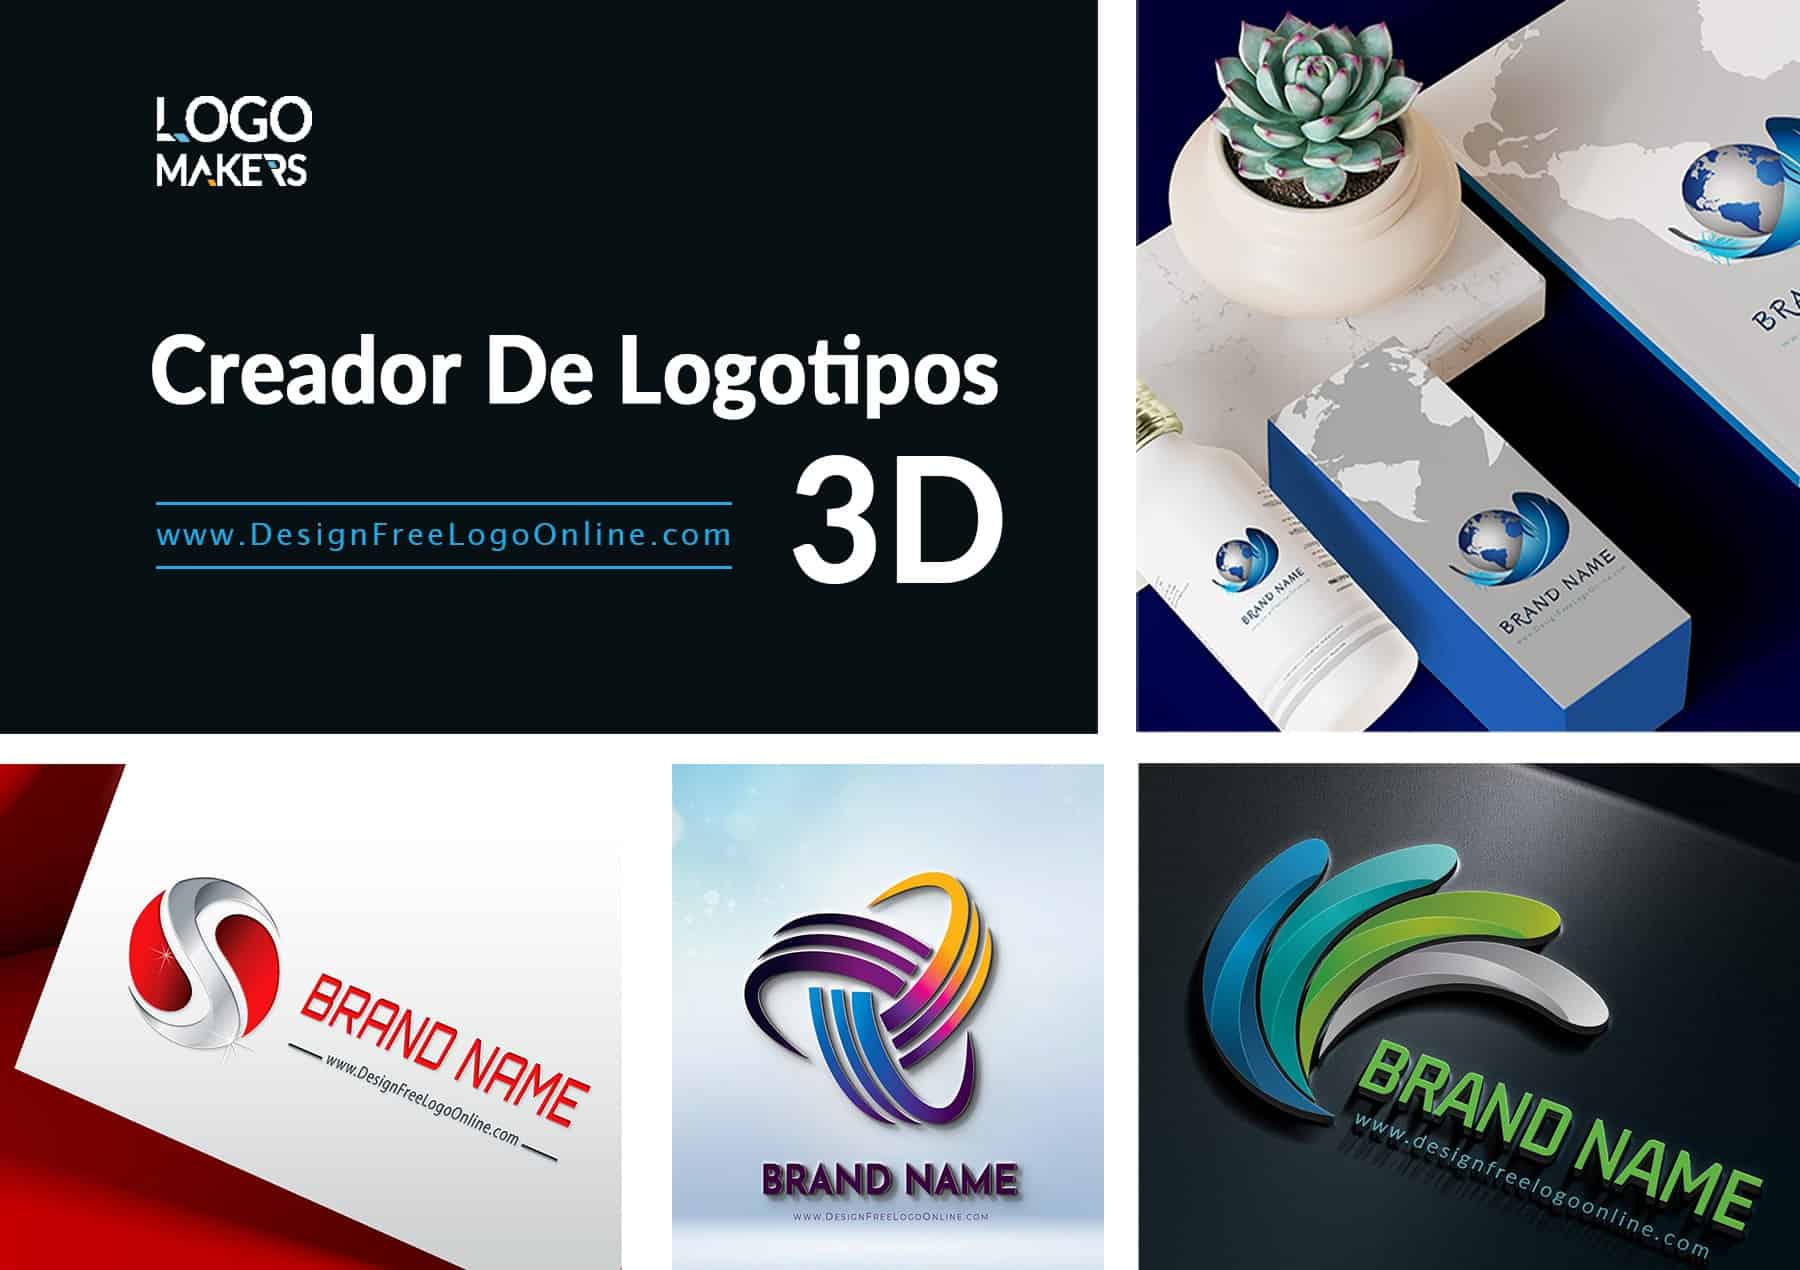 Creador De Logotipos 3D